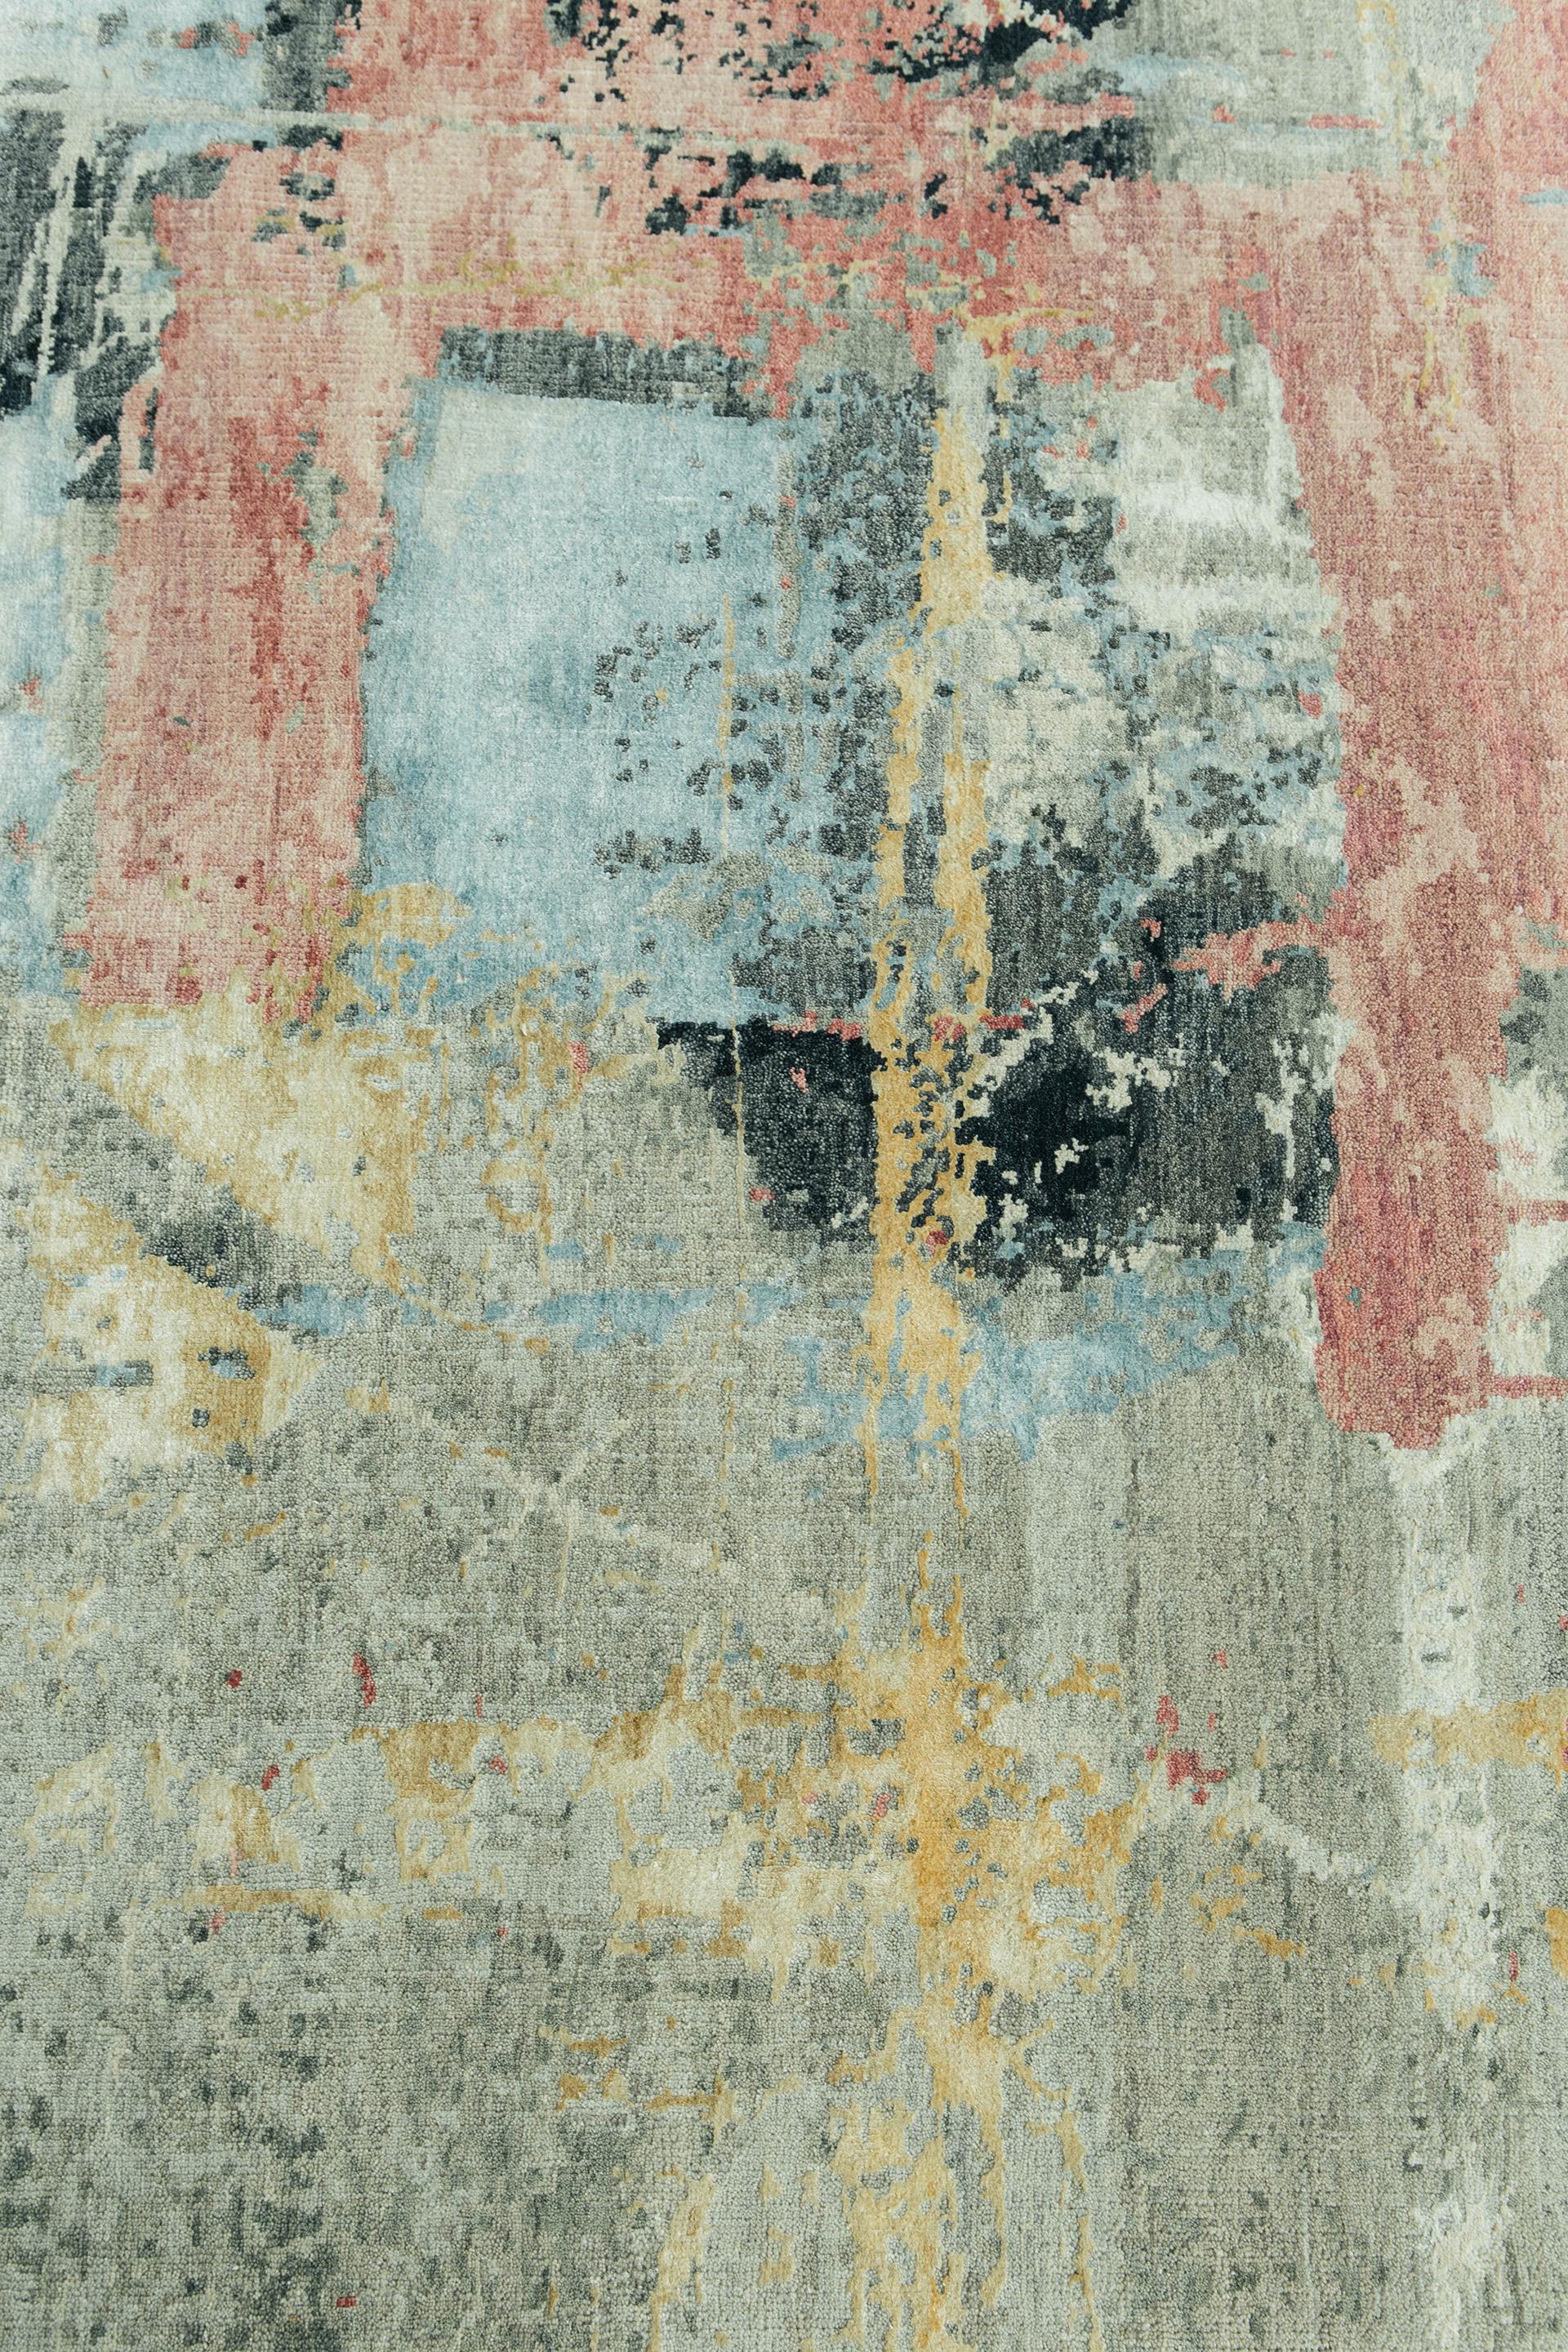 Ähnlich wie Granit ähnelt unser Serizzo-Teppich den organischen und fließenden Elementen von Stein und hinterlässt mit seinen kontrastreichen Farben bleibende Eindrücke. Die Blau-, Gelb- und Rosatöne von Ottika verleihen dem Stück aus Seide und